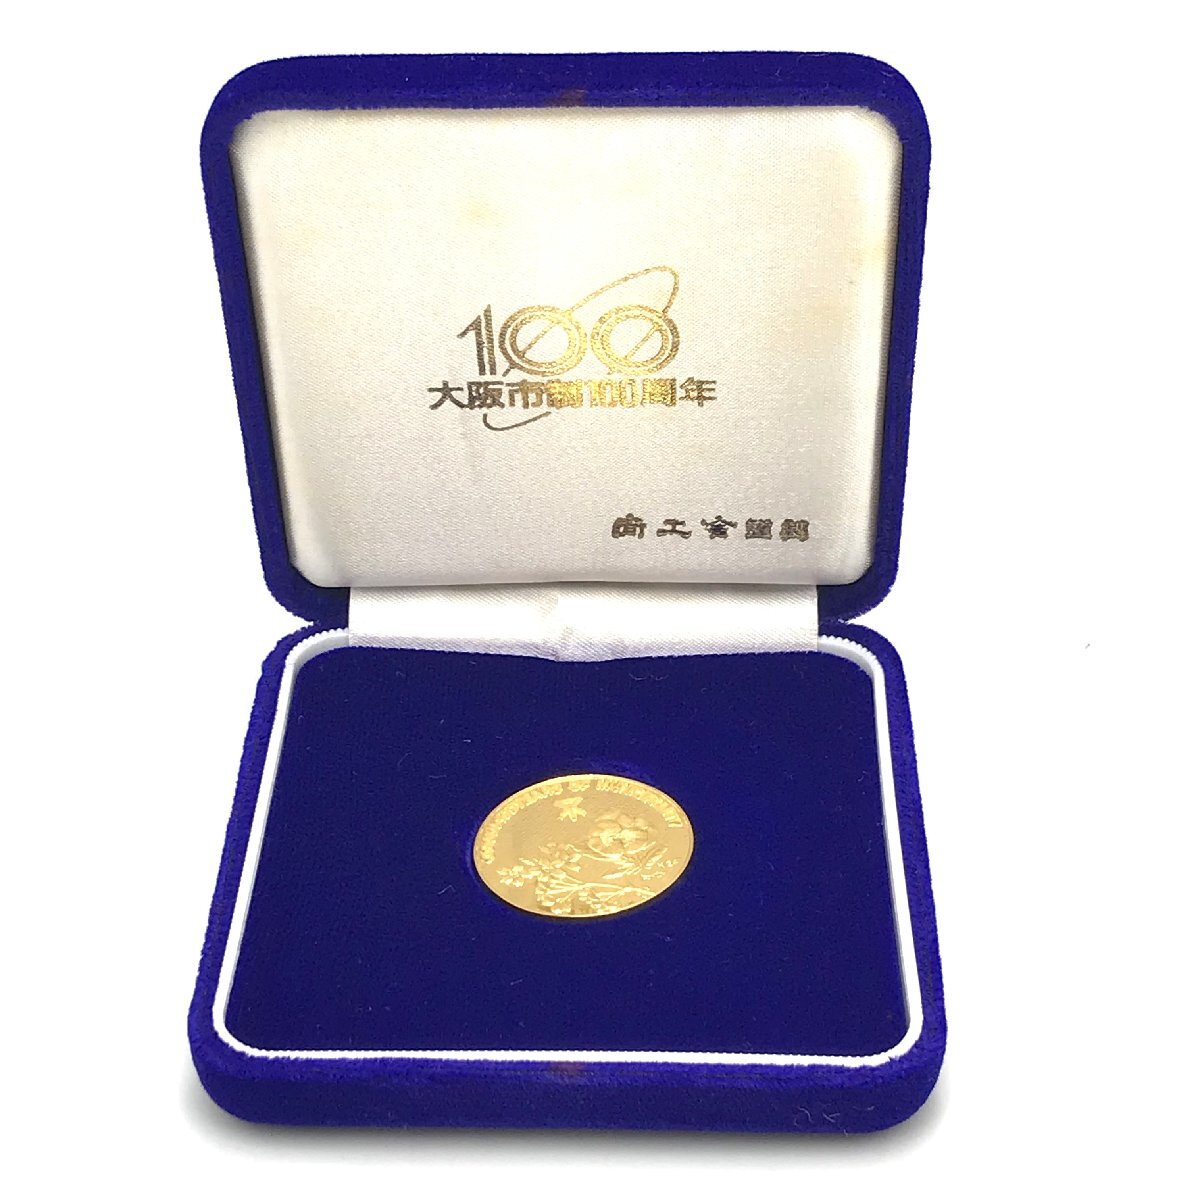 ホールマーク付き 純金メダル 大阪市制100周年記念公式メダル 純金製 22g コイン 記念メダル K24 純金 平成元年4月　化粧箱入 fe ABC1_画像1